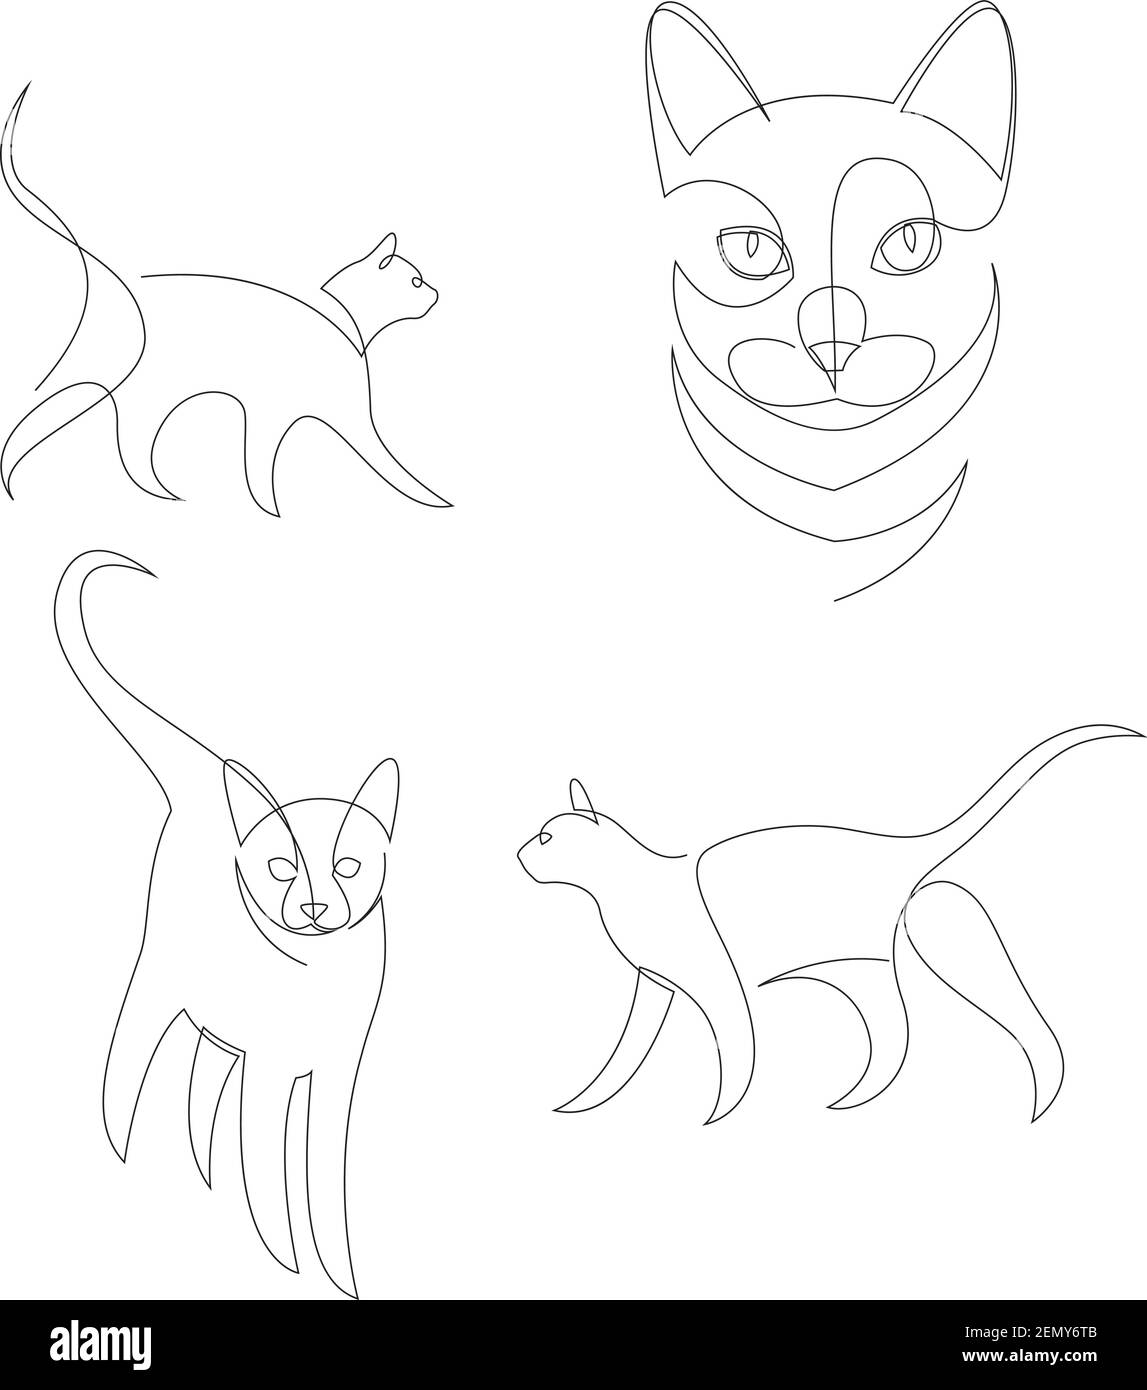 Jeu de dessin de ligne continue de chat animal. Collection d'illustrations vectorielles de style minimaliste Illustration de Vecteur